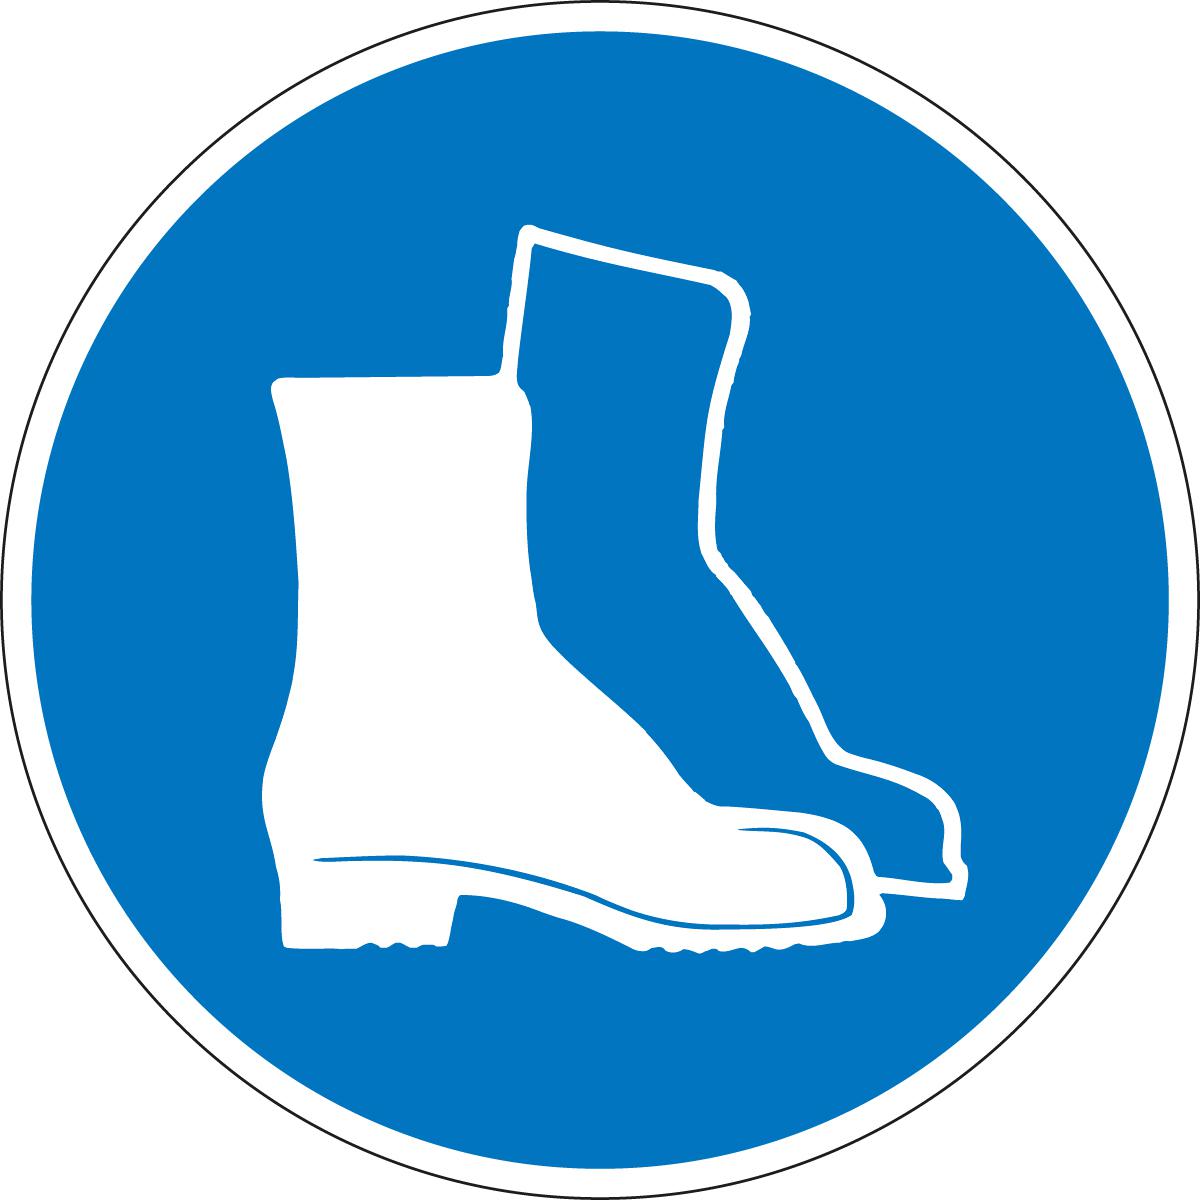 Gebodsbord voetbescherming verplicht, sticker  ZOOM